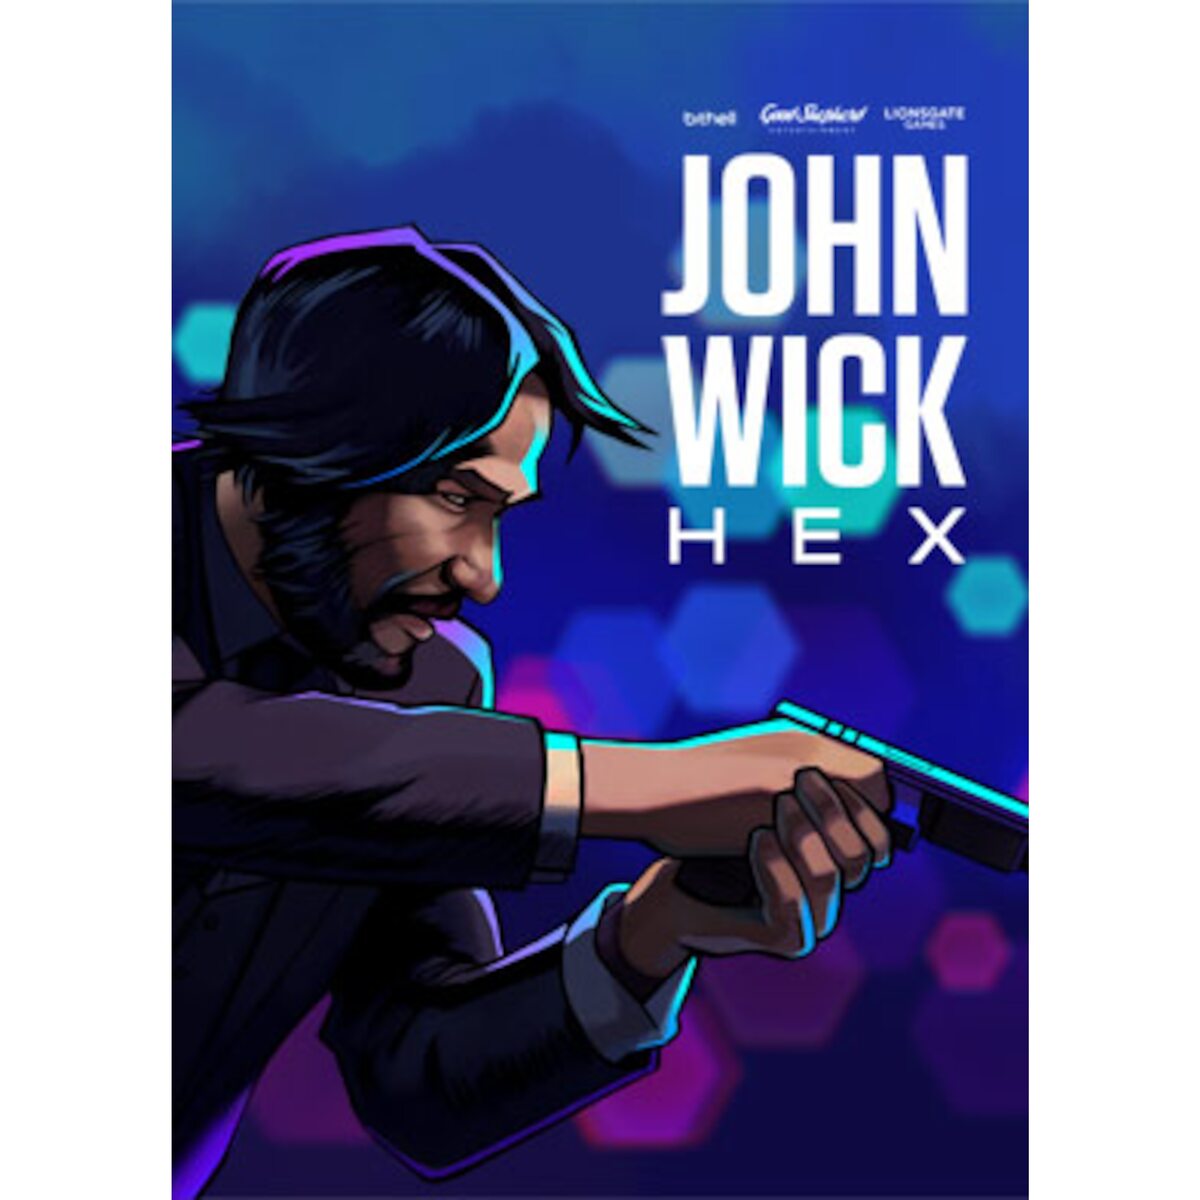 john wick hex mode